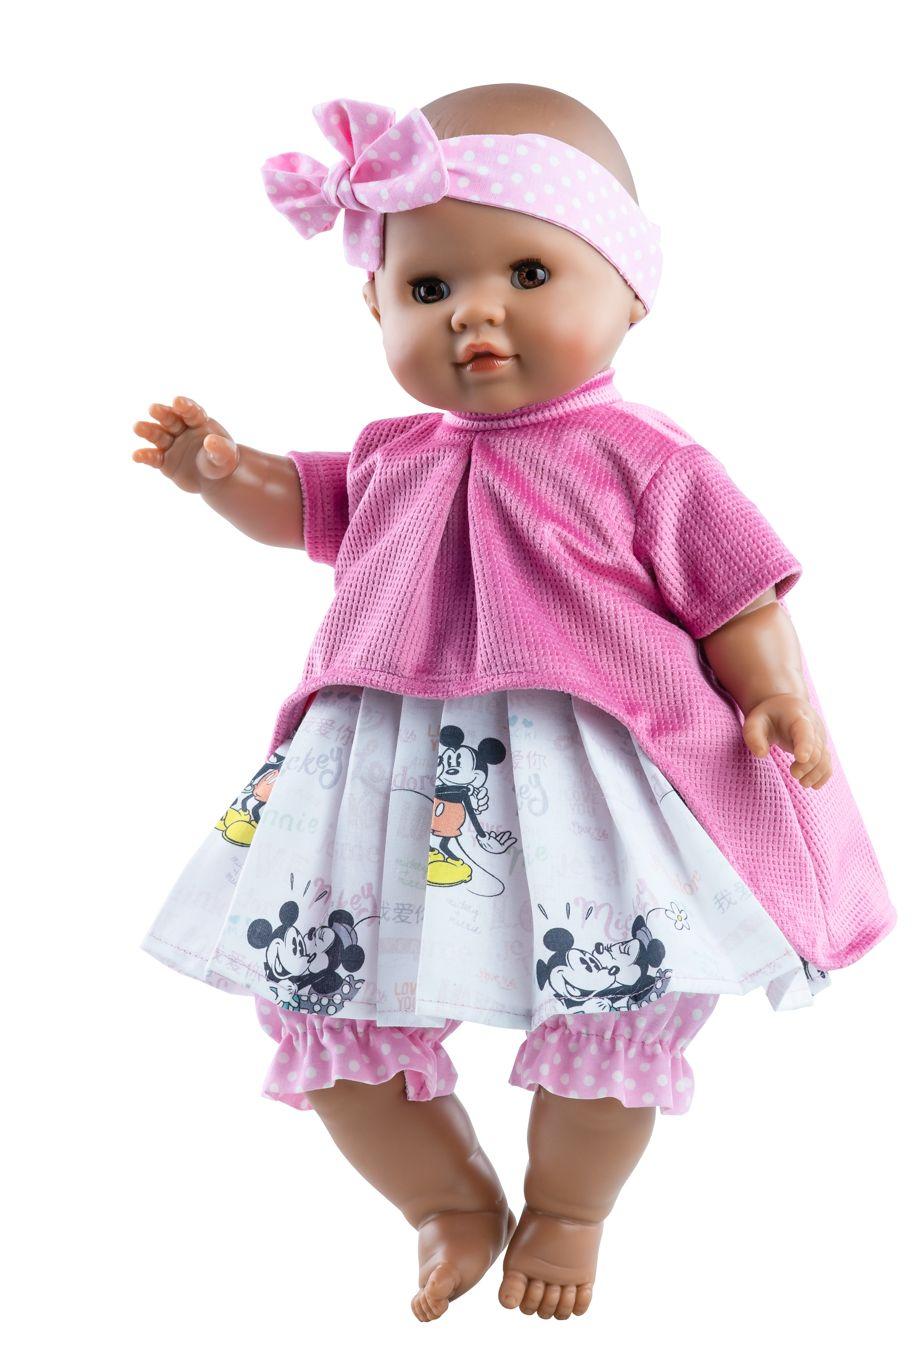 Realistické miminko - holčička Alberta v šatech s Mickey Mousem od firmy Paola R